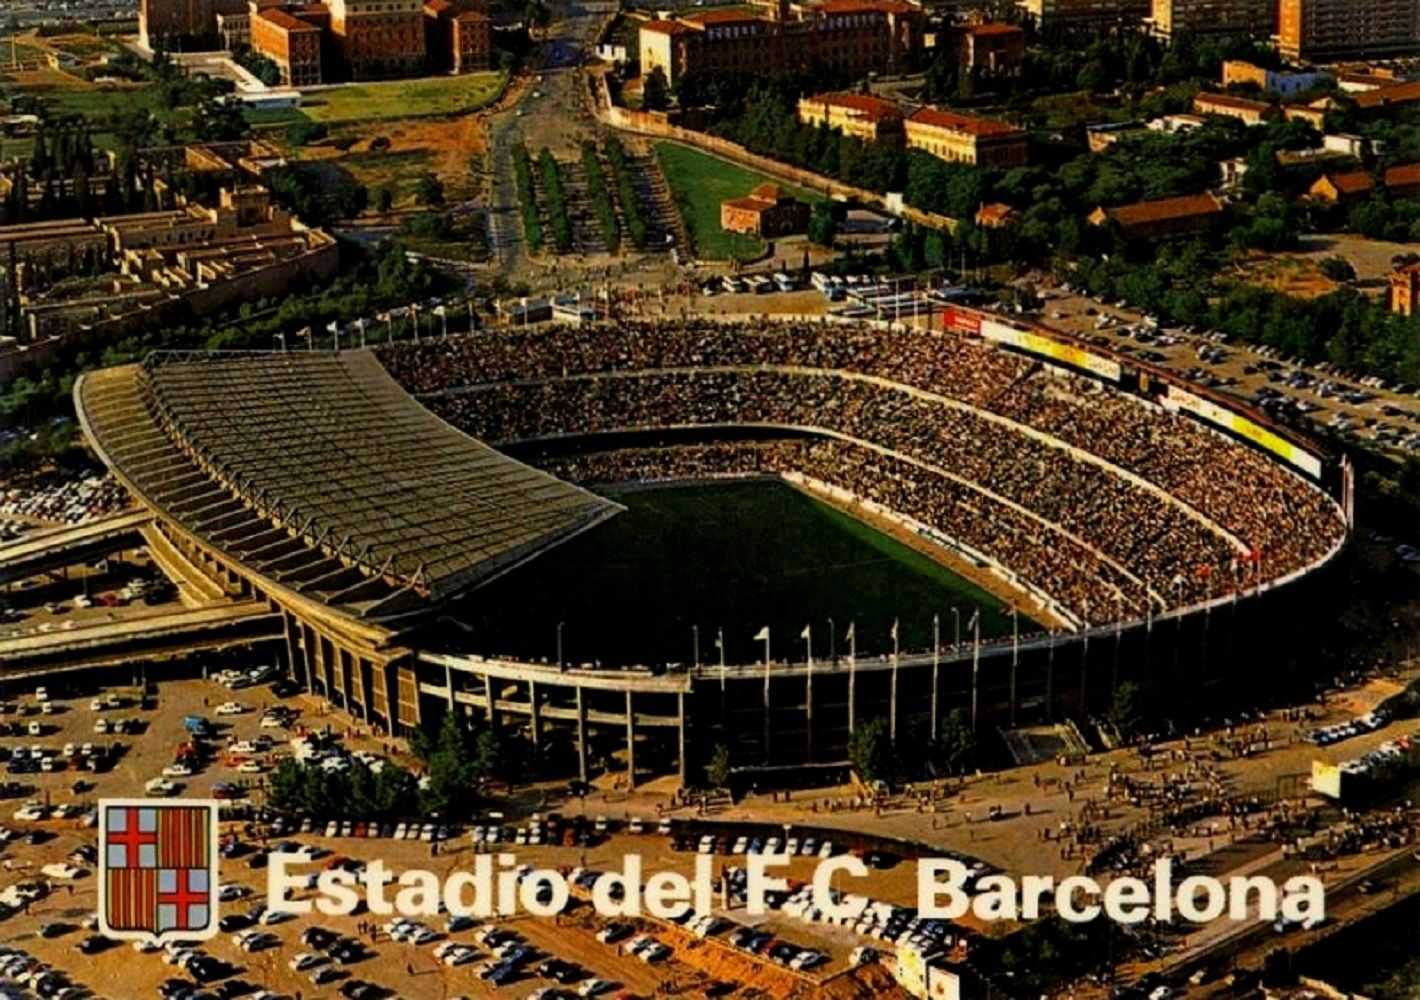 Inauguració del Camp Nou, temple del catalanisme